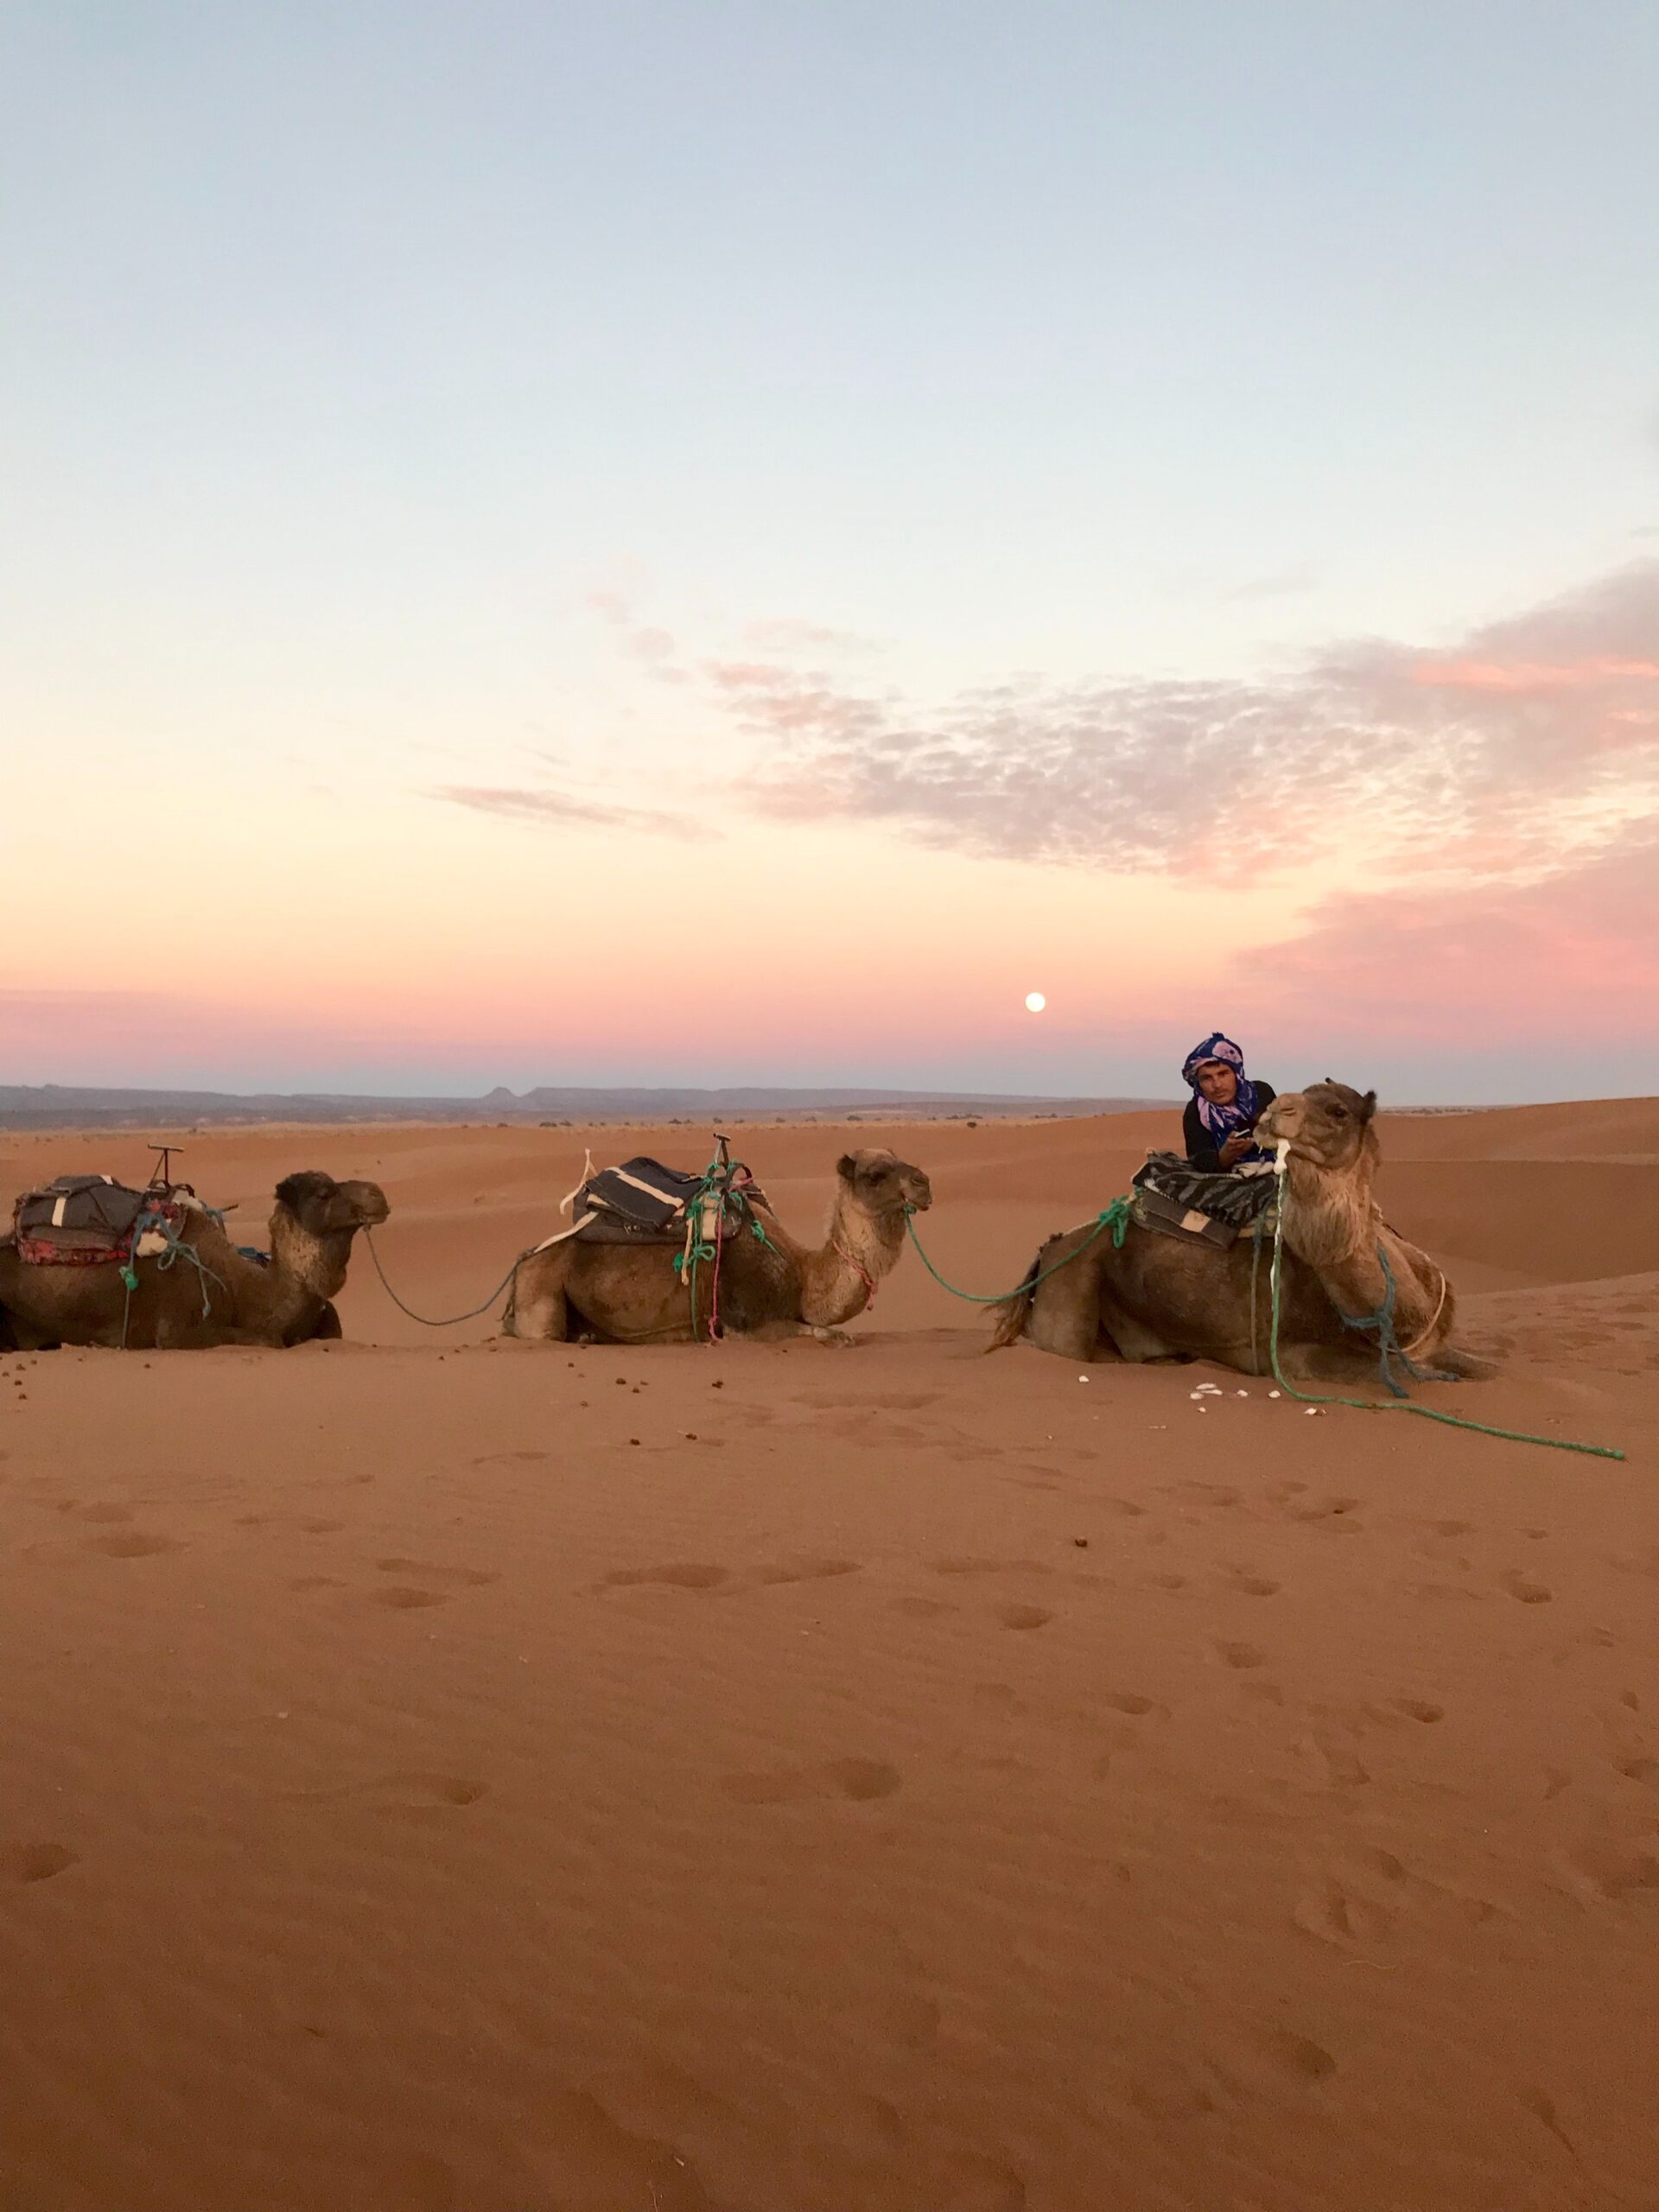 Excursiones al Desierto desde Marrakech: Tu Aventura Única